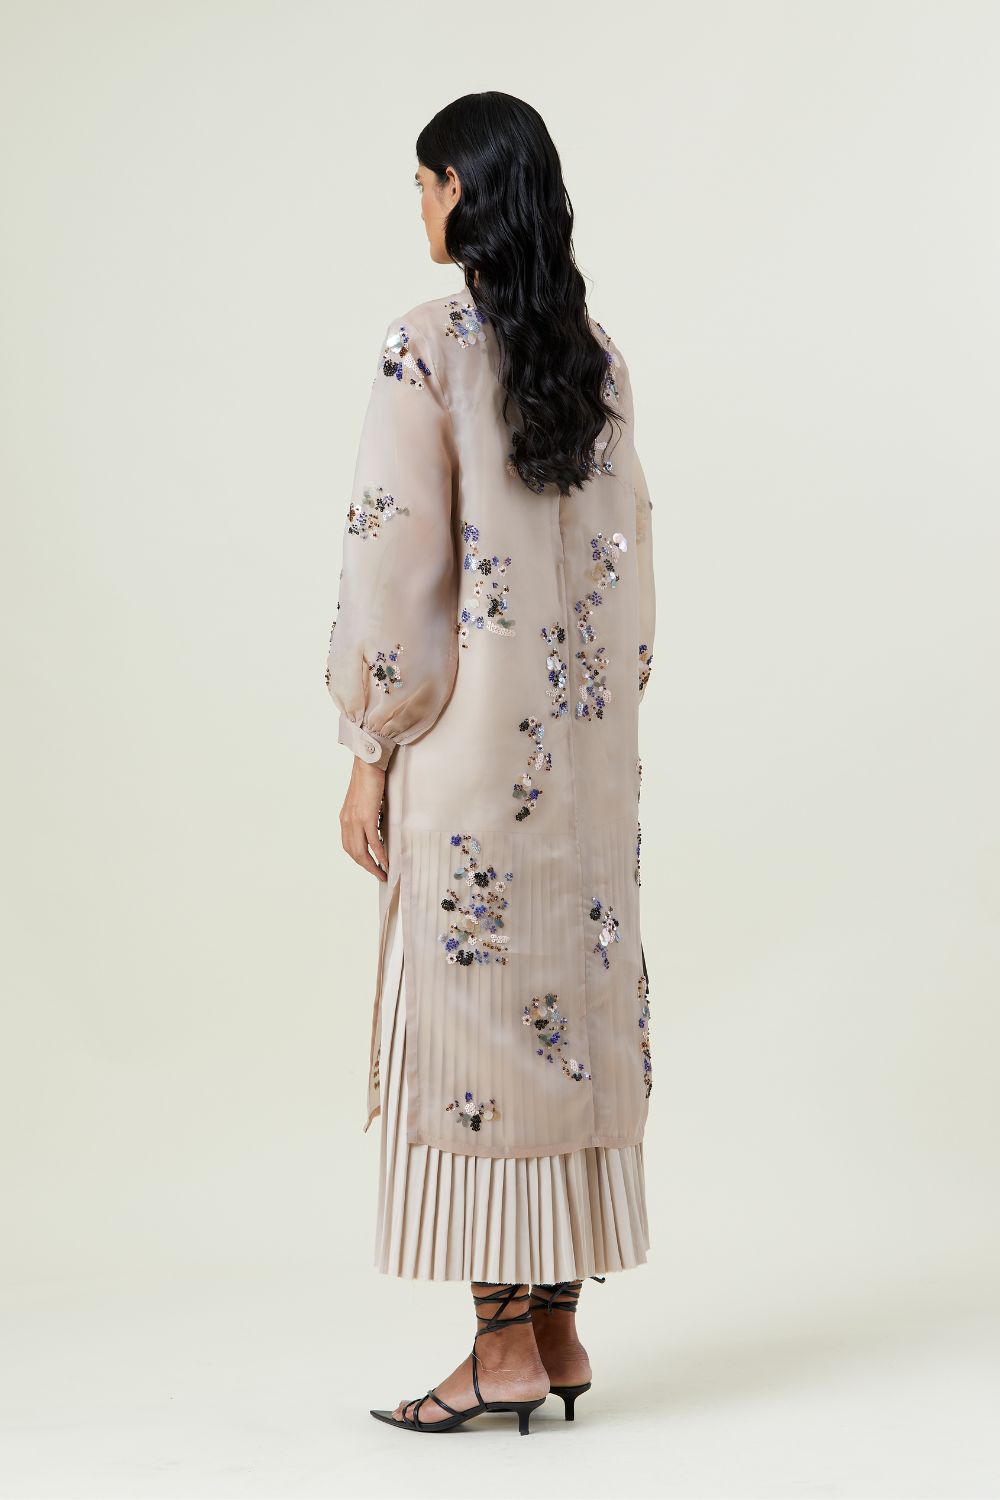 'Zephyr' Embellished Dress